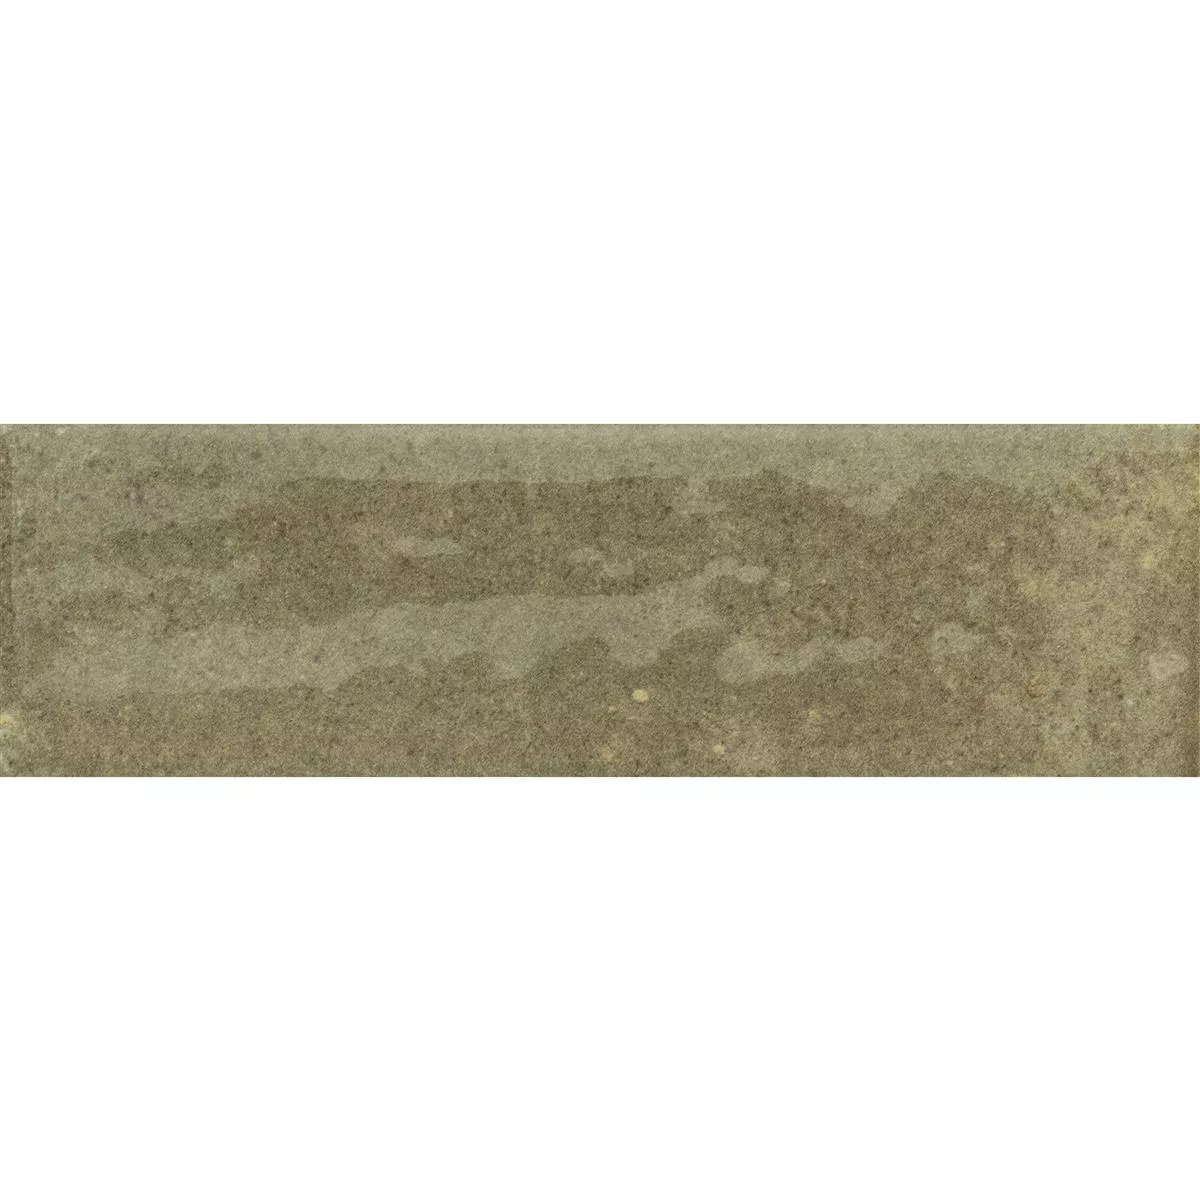 Sample Wandtegels Arosa Glanzend Gegolfd Olijfgroen 6x25cm